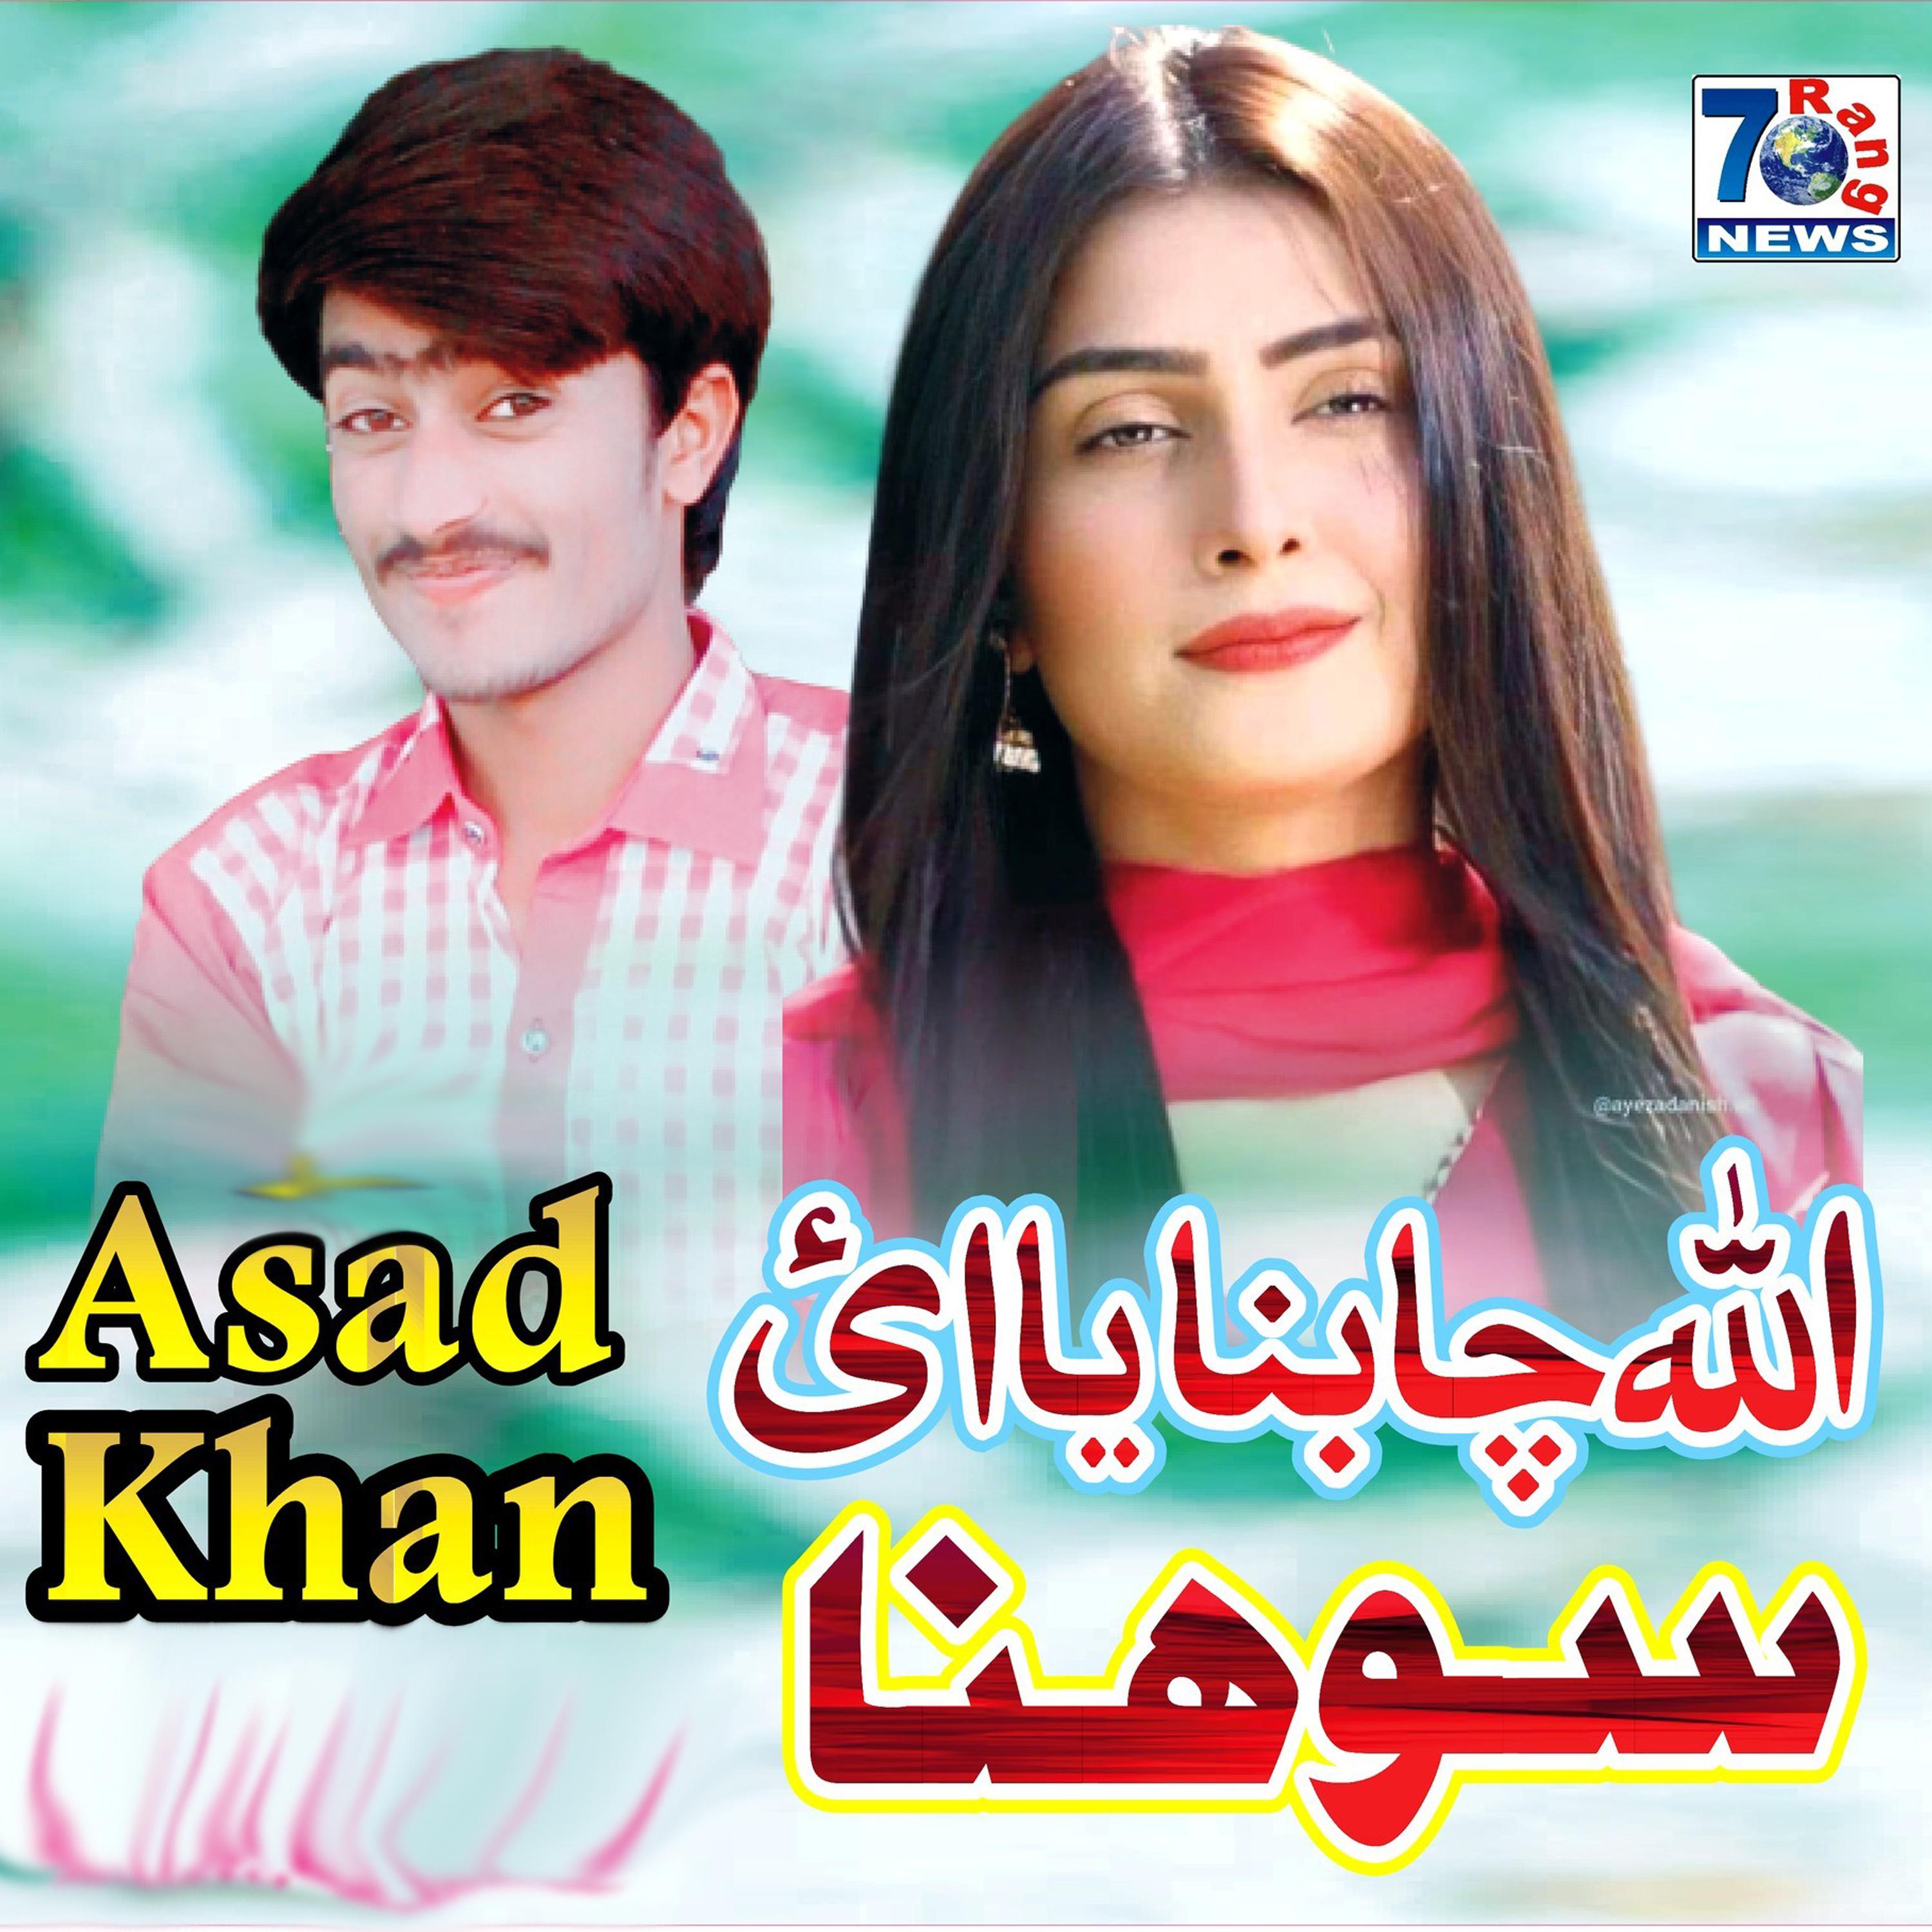 Asad Khan - Allah Cha Banaya Ee Sohna